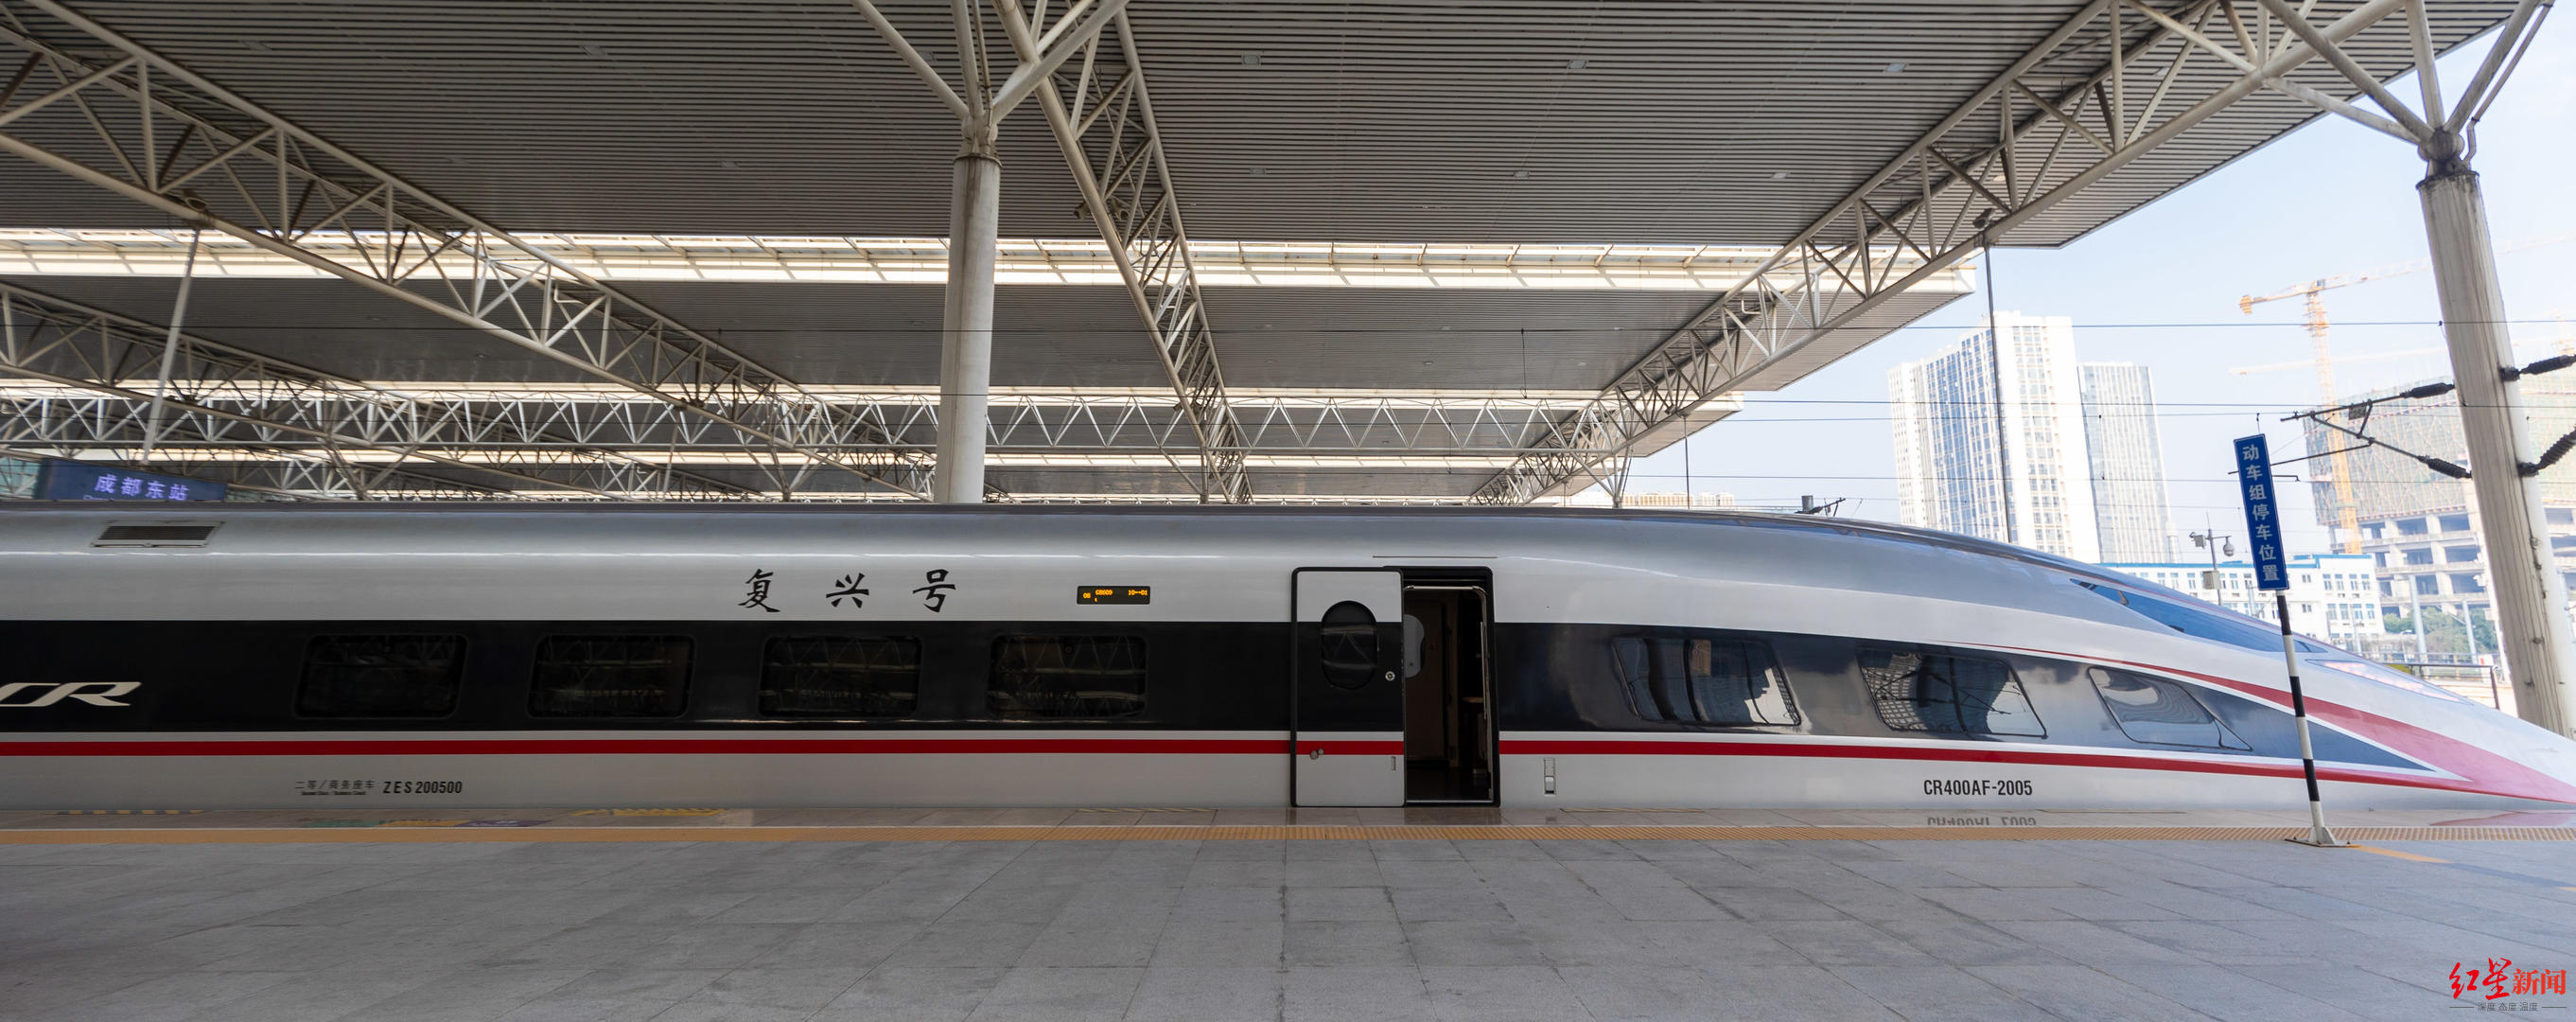 发布《新建沪渝蓉高速铁路重庆至成都段十陵南站等3座客站建筑概念设